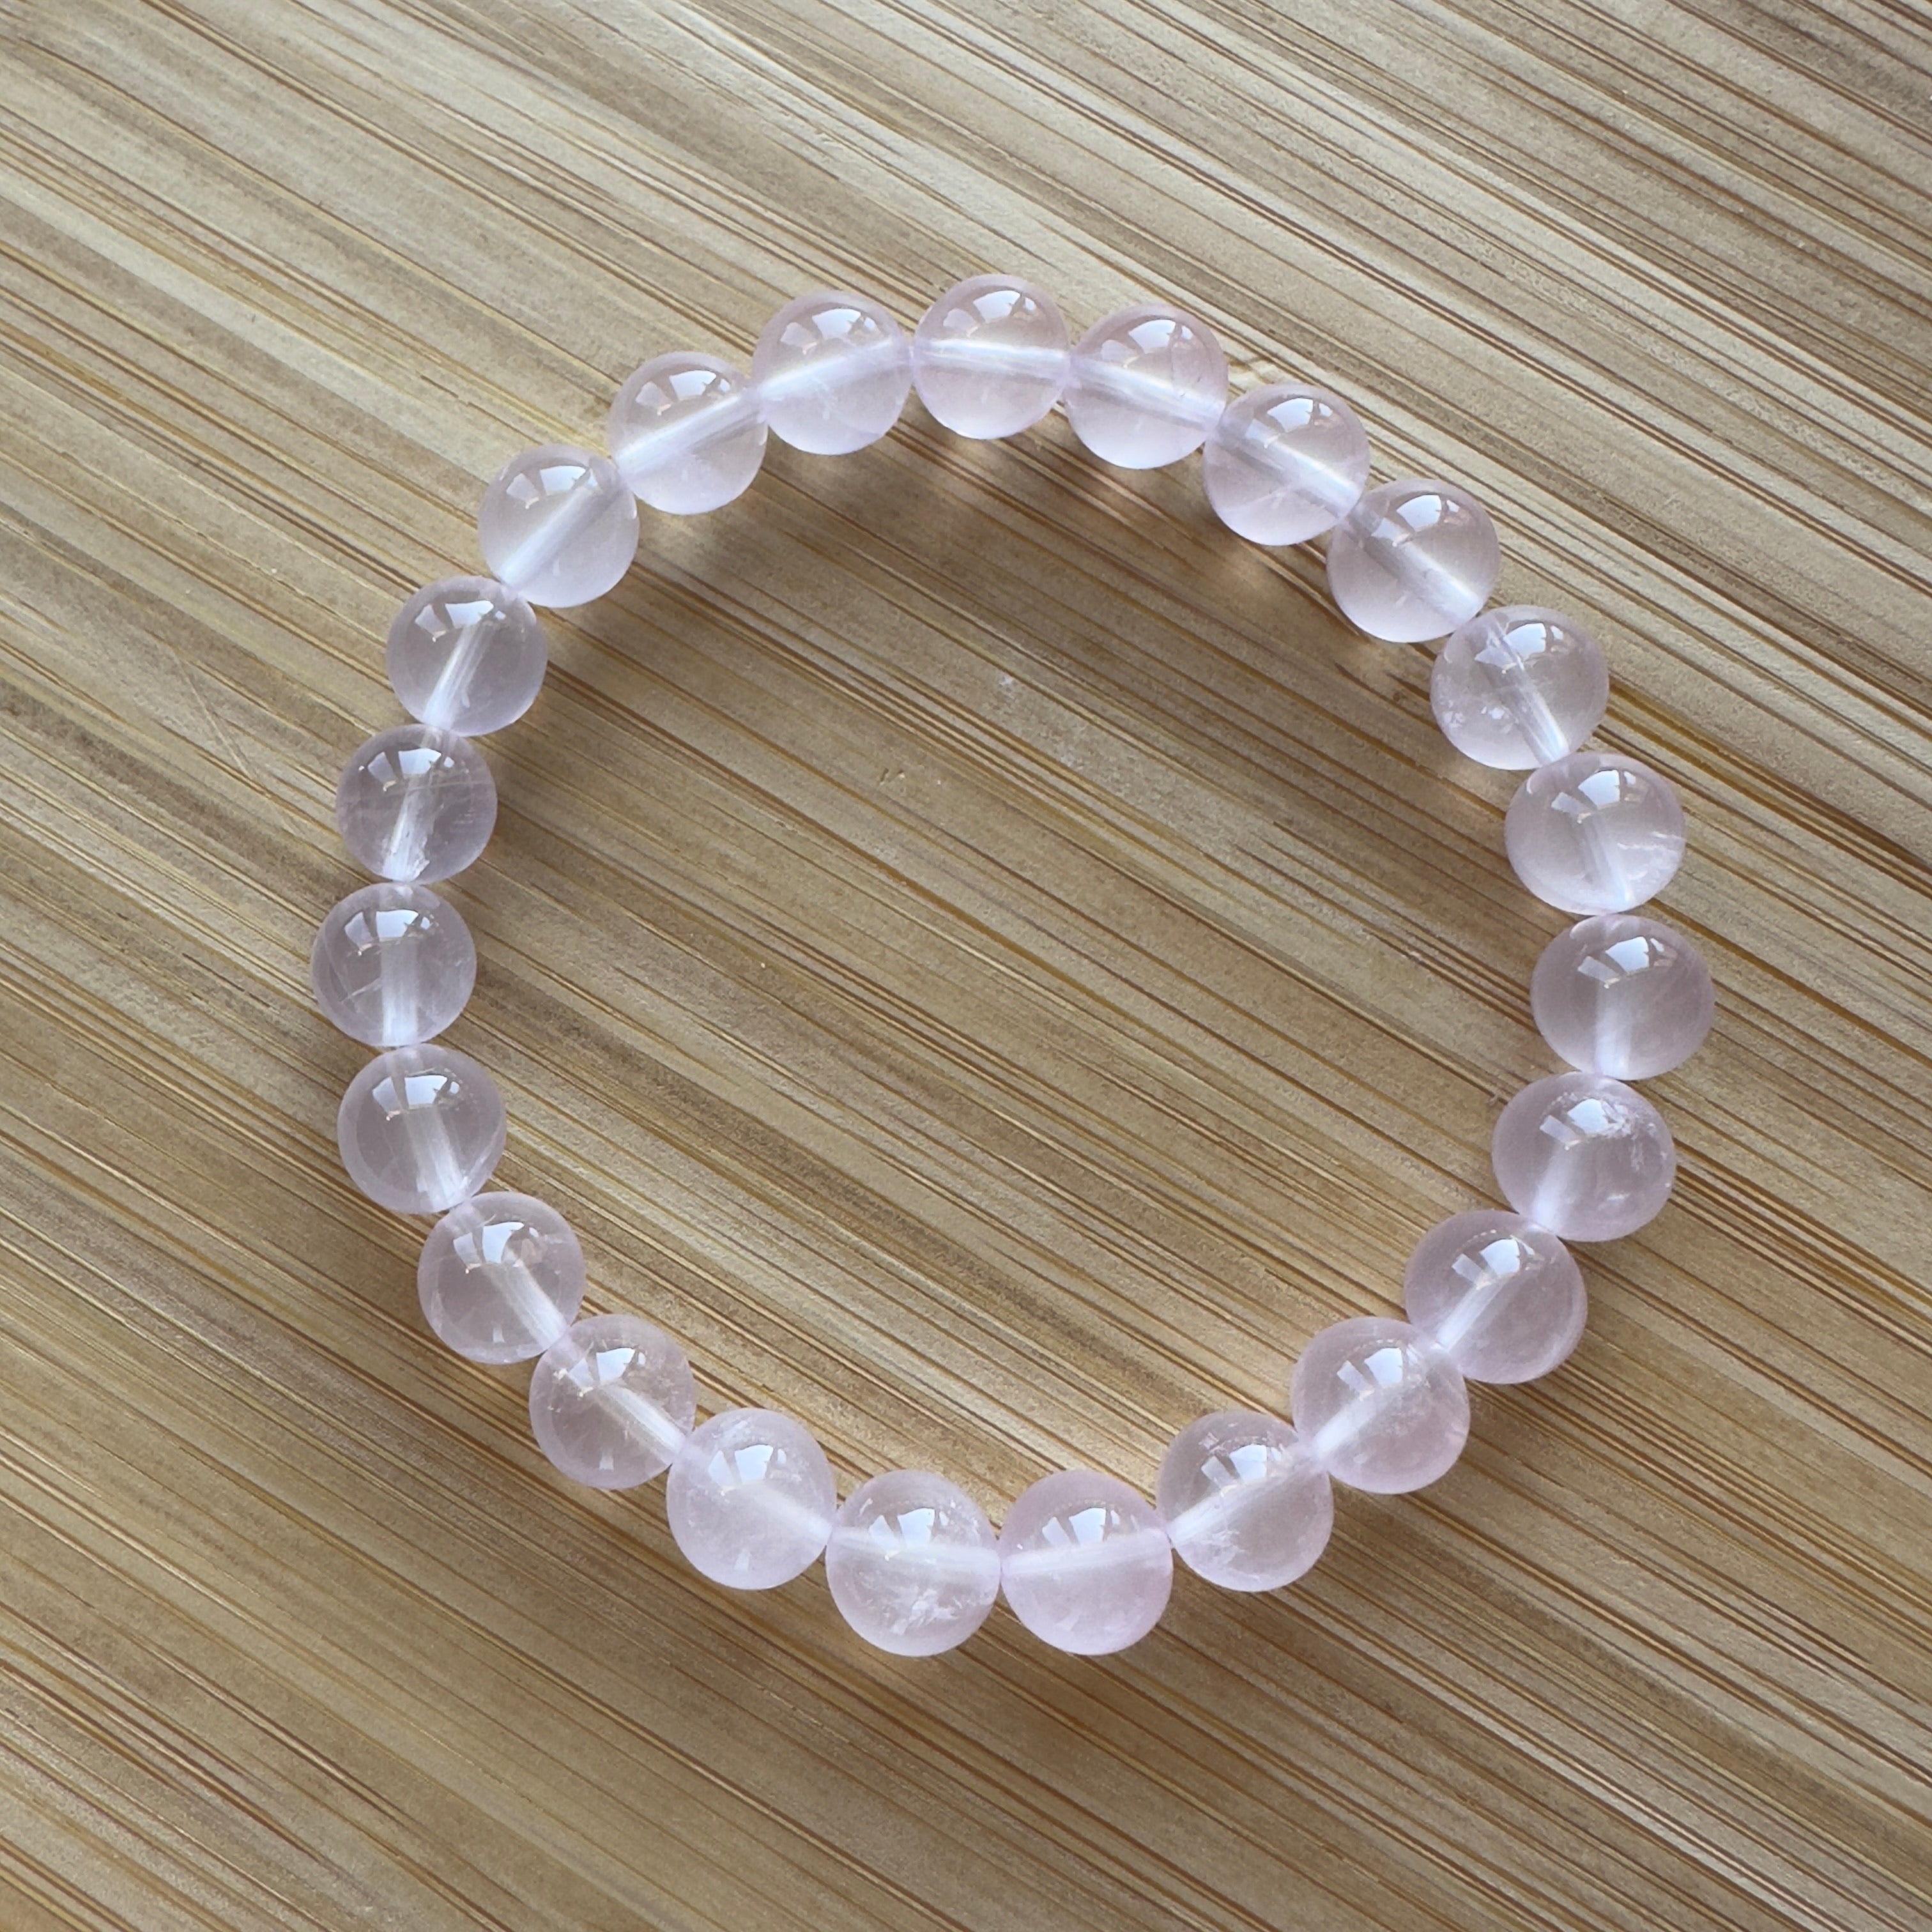 Mozambique Rose Quartz (Star Light) Beaded Bracelet 8.5MM ★WYSIWYG★